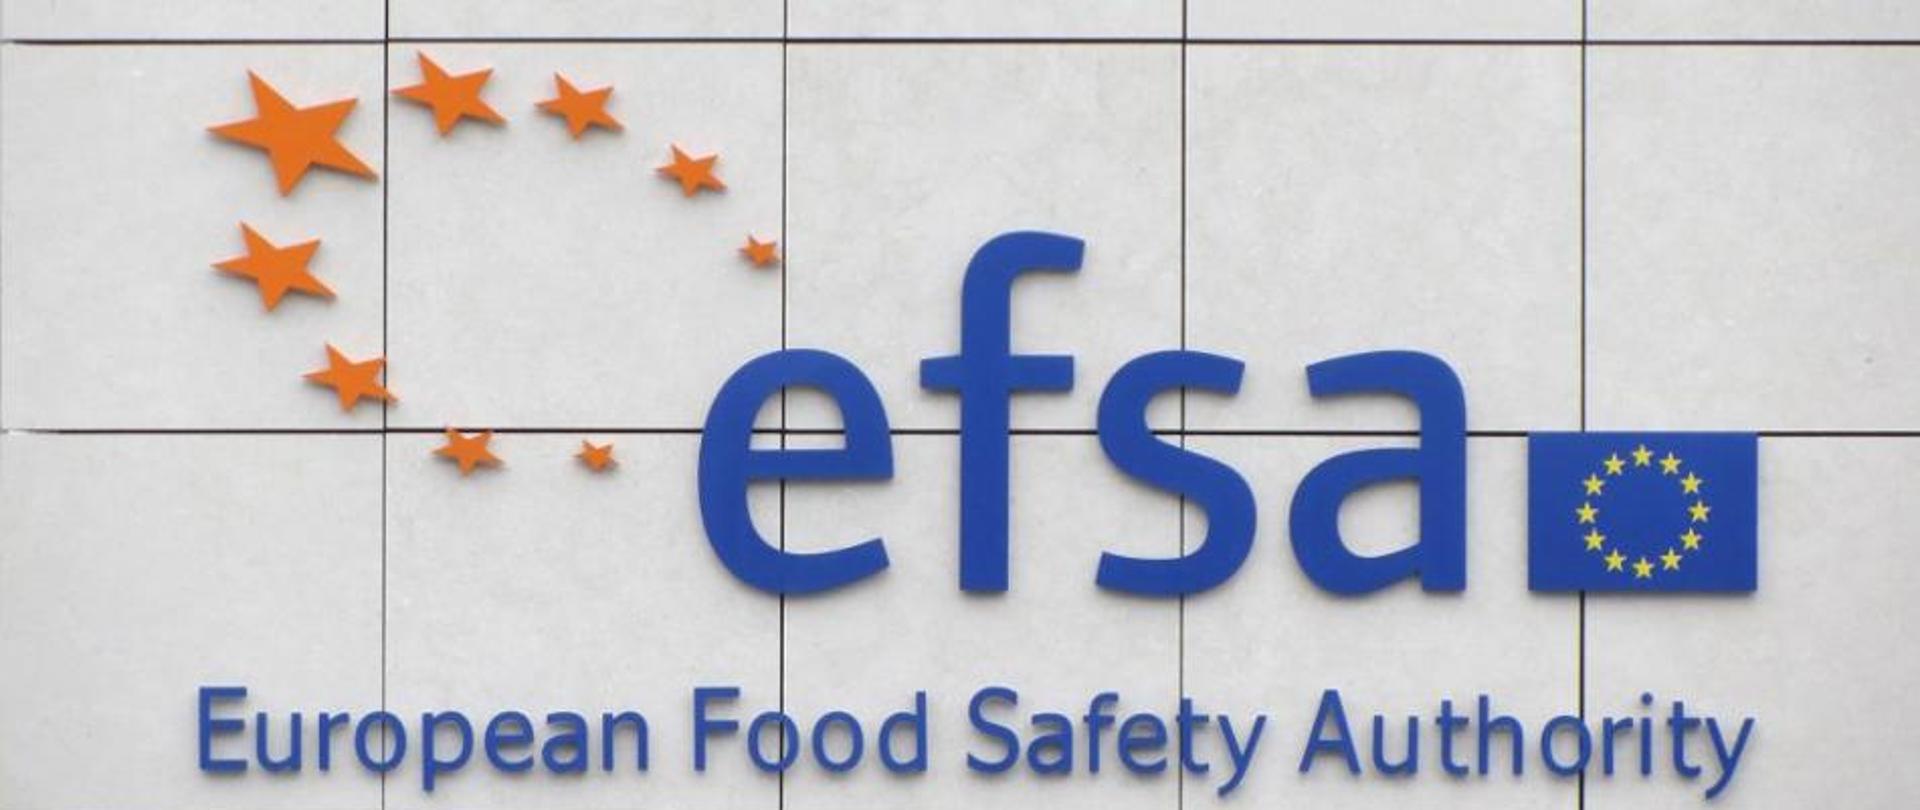 Niebieski napis efsa. Wyżej po lewej stronie 9 gwiazdek w pomarańczowym kolorze. Po prawej od napisu efsa flaga unii europejskiej. Pod napisem efsa rozwinięcie skrótu European Food Safety Authority